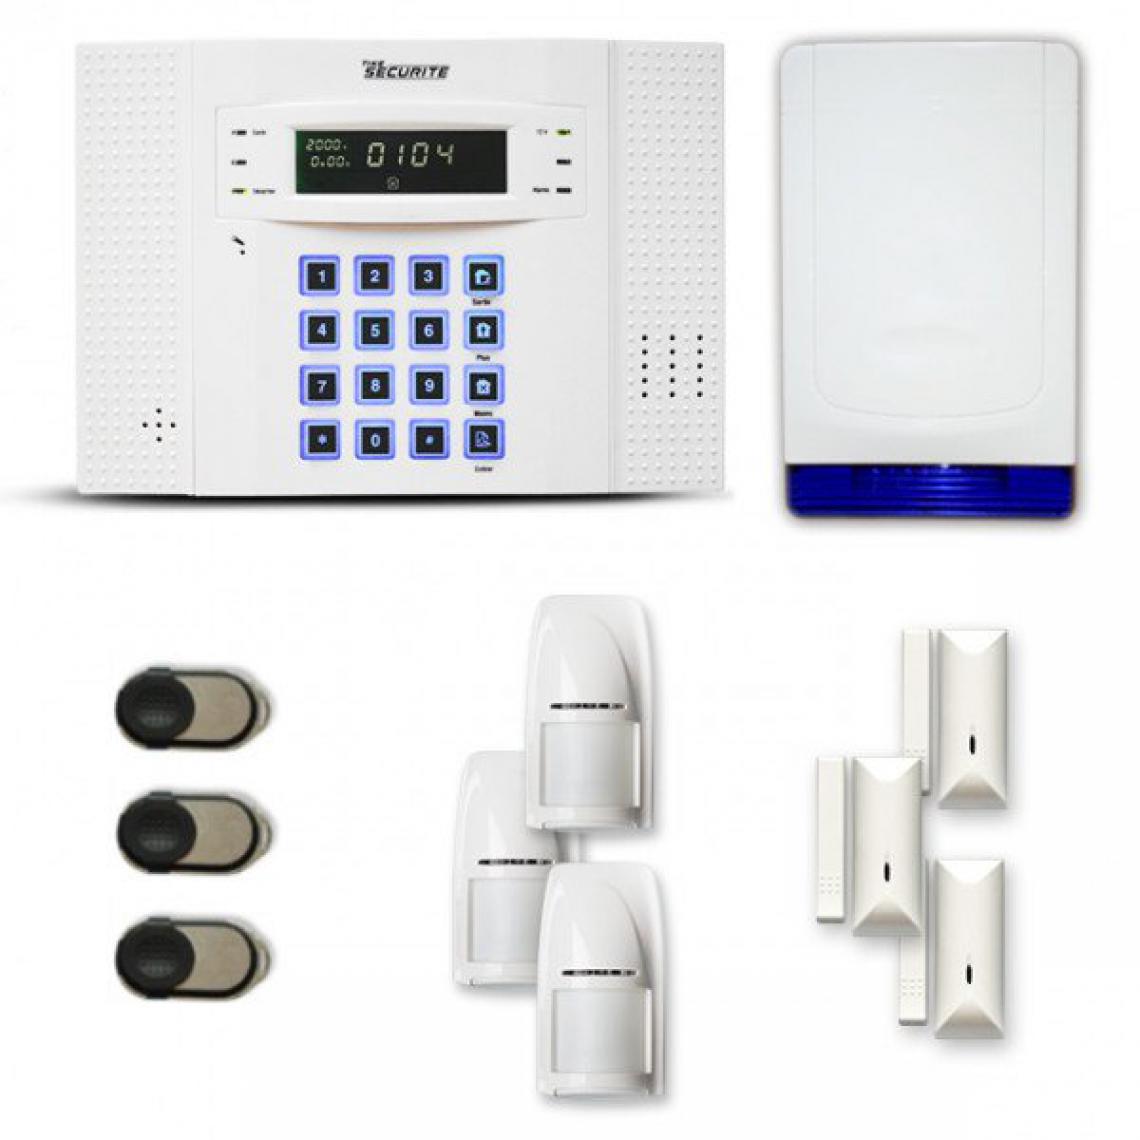 Tike Securite - Alarme maison sans fil DNB16 Compatible Box internet et GSM - Alarme connectée